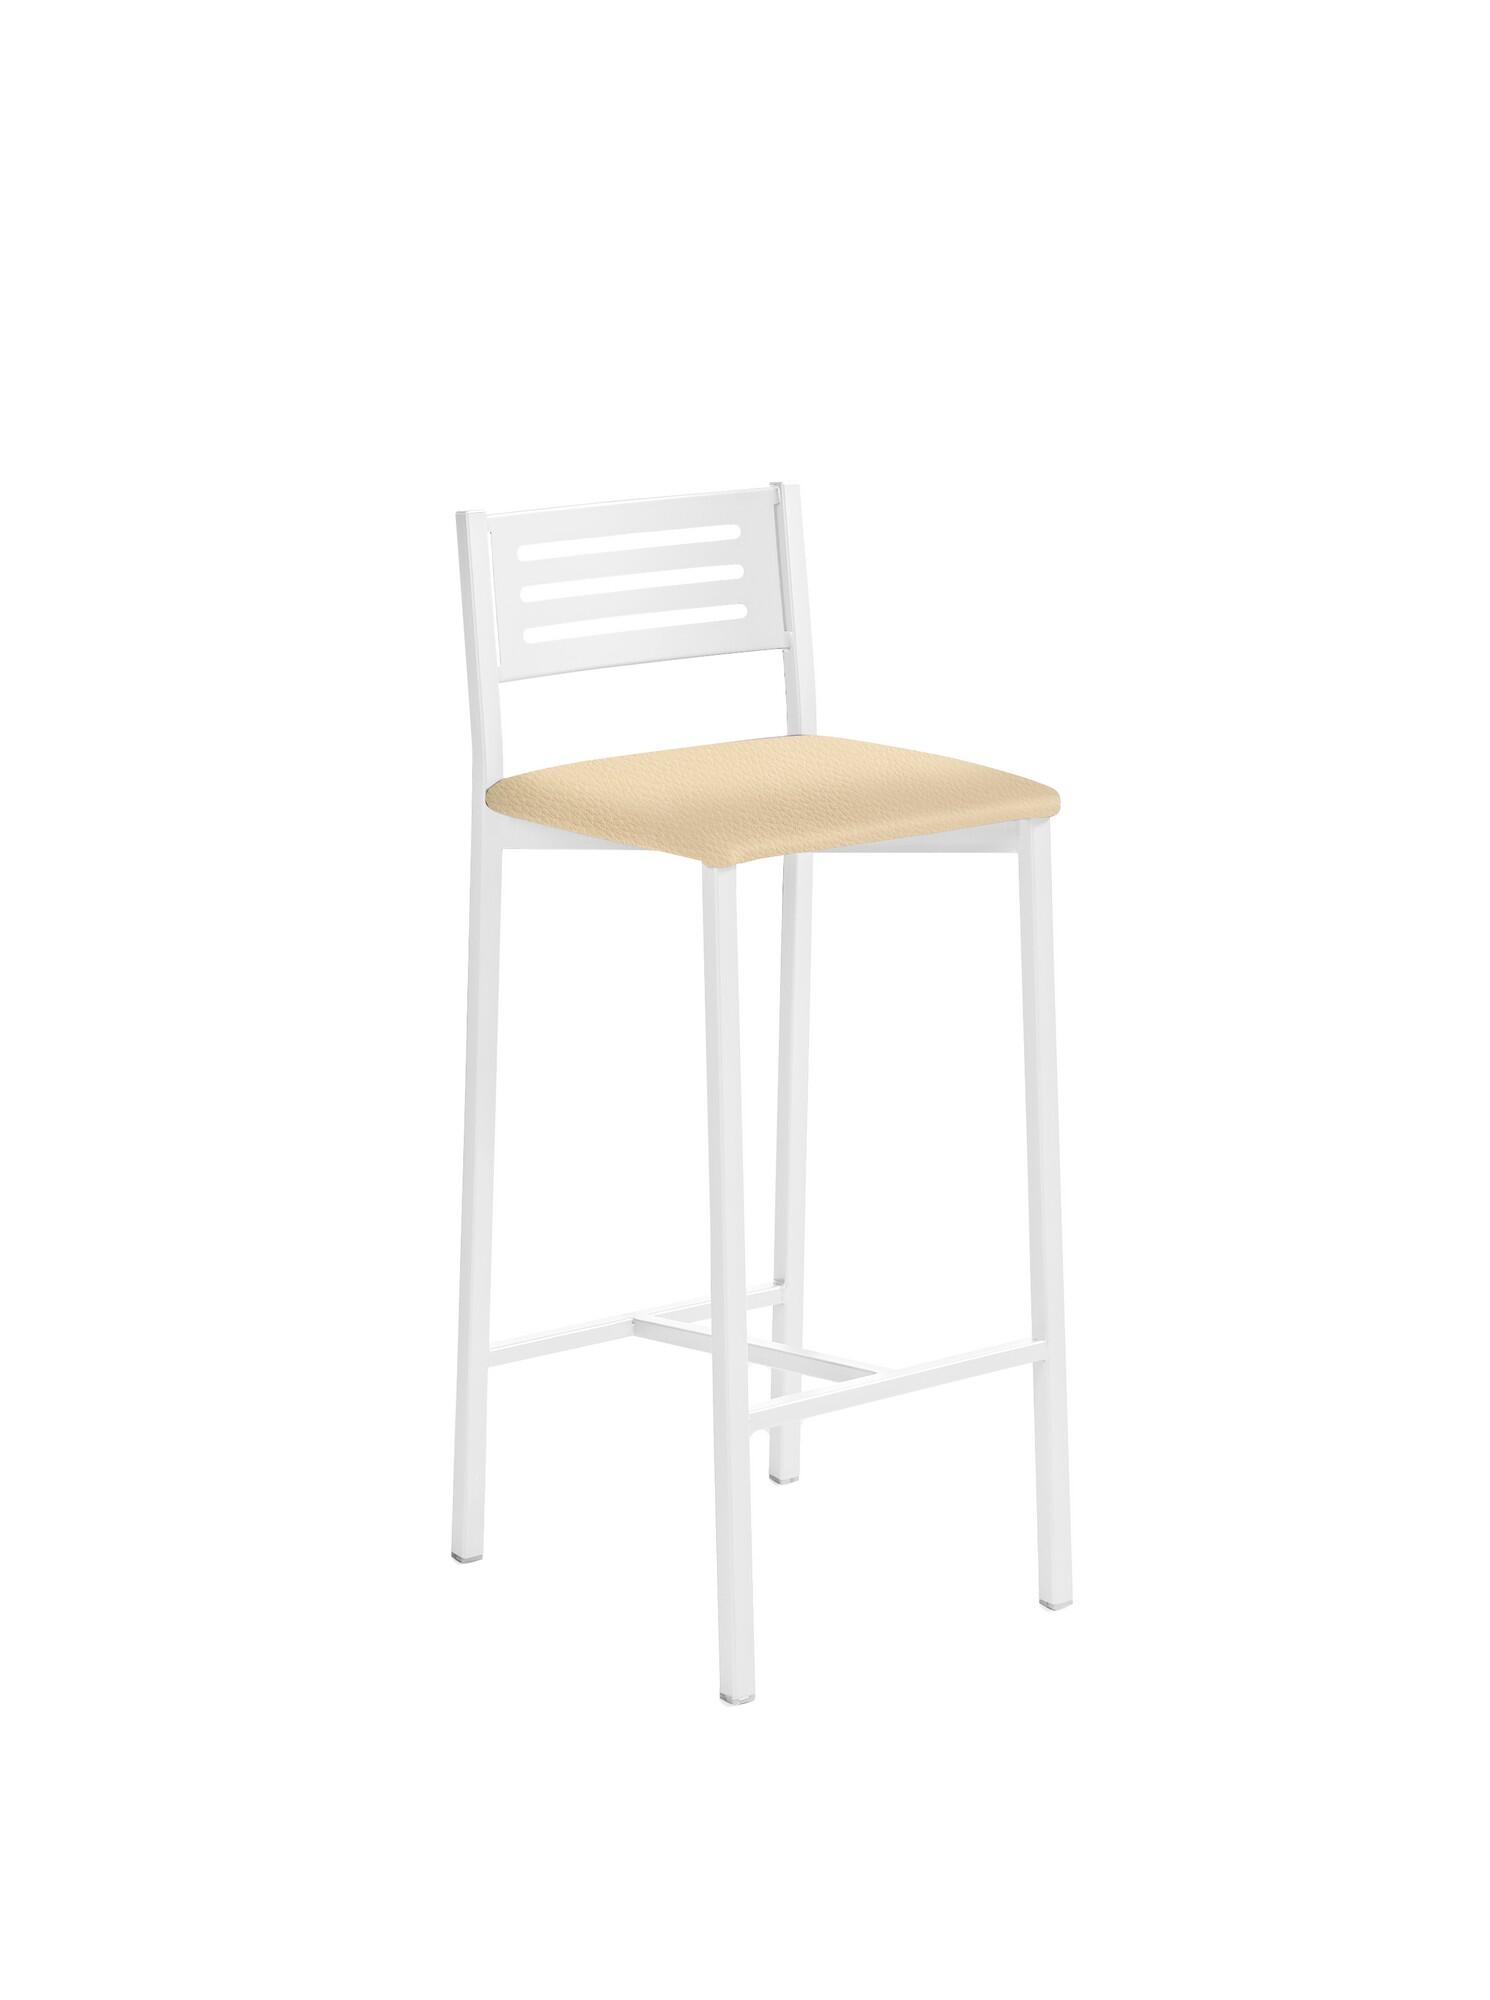 Taburete de estructura color blanco texturizado y asiento crema de 33 x 66 cm